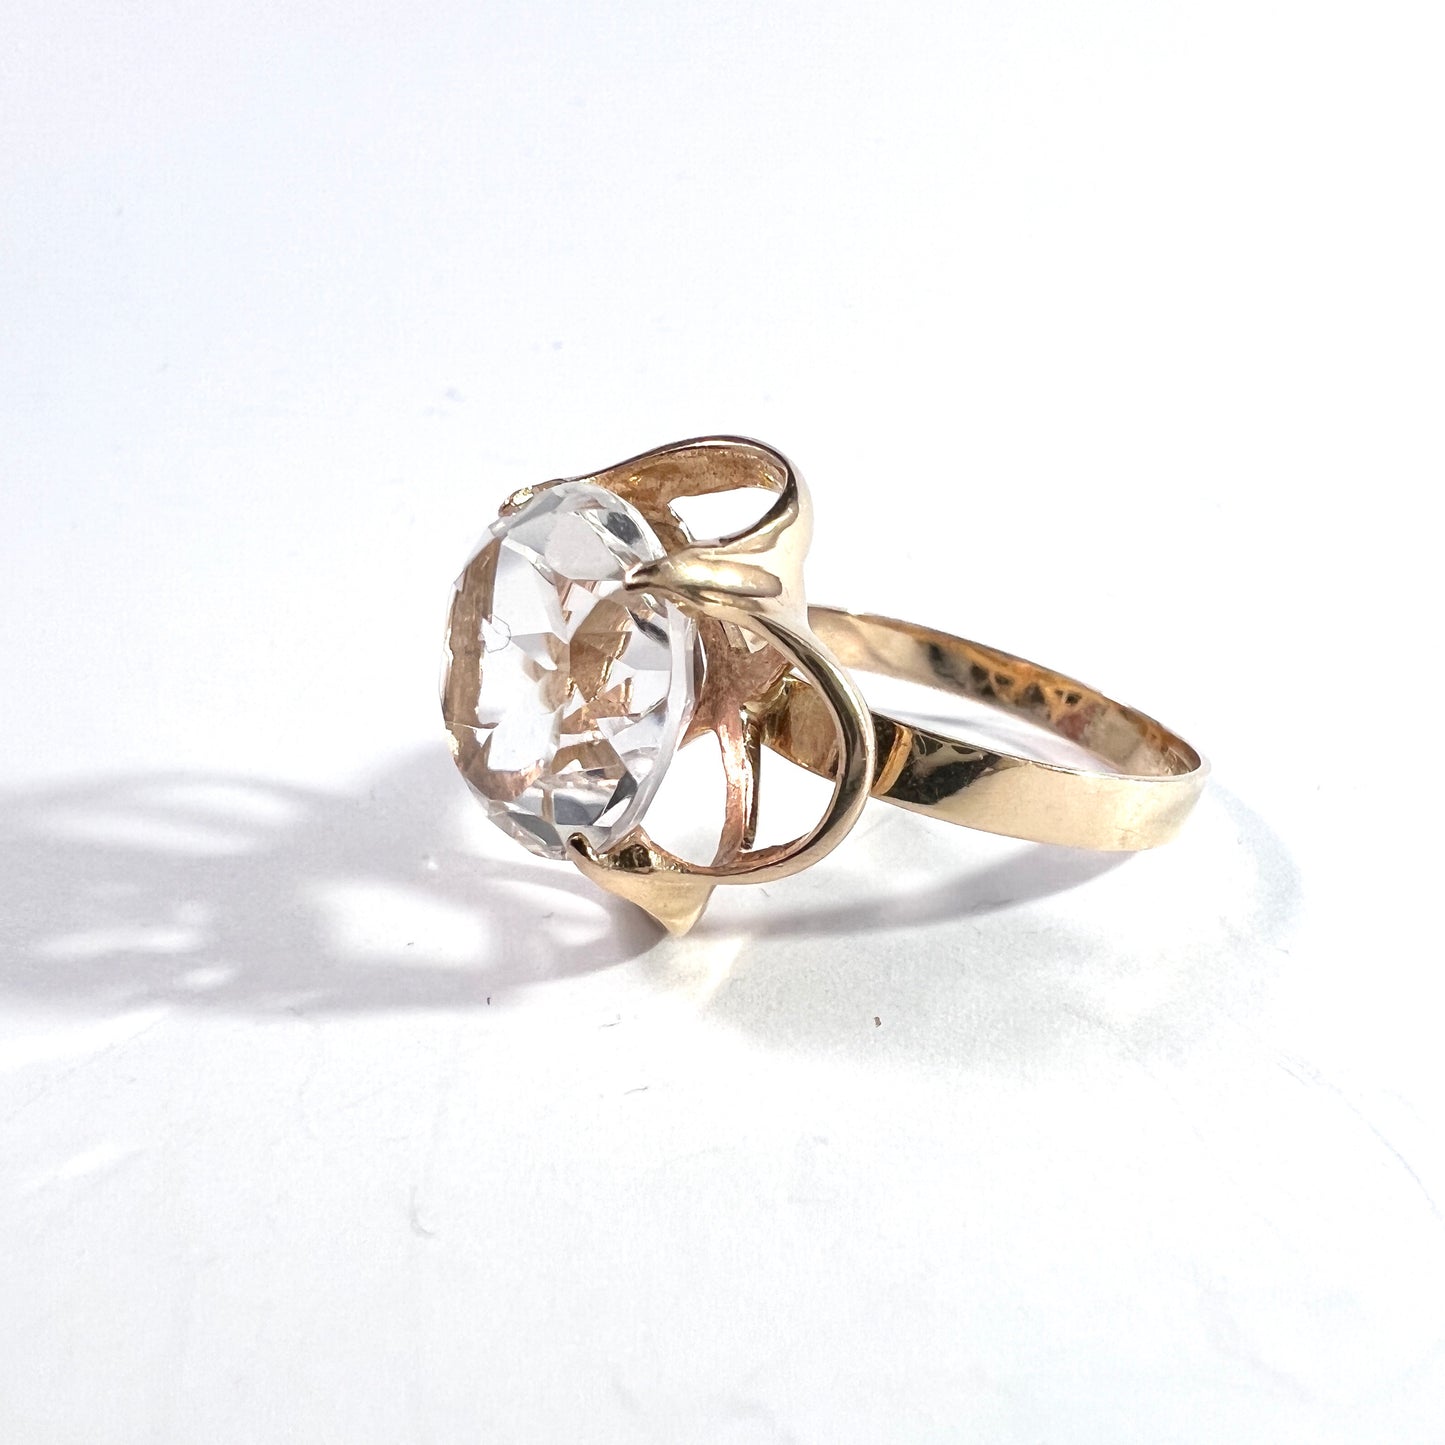 Bengt Hallberg, Sweden 1975. Vintage 18k Gold Rock Crystal Ring.